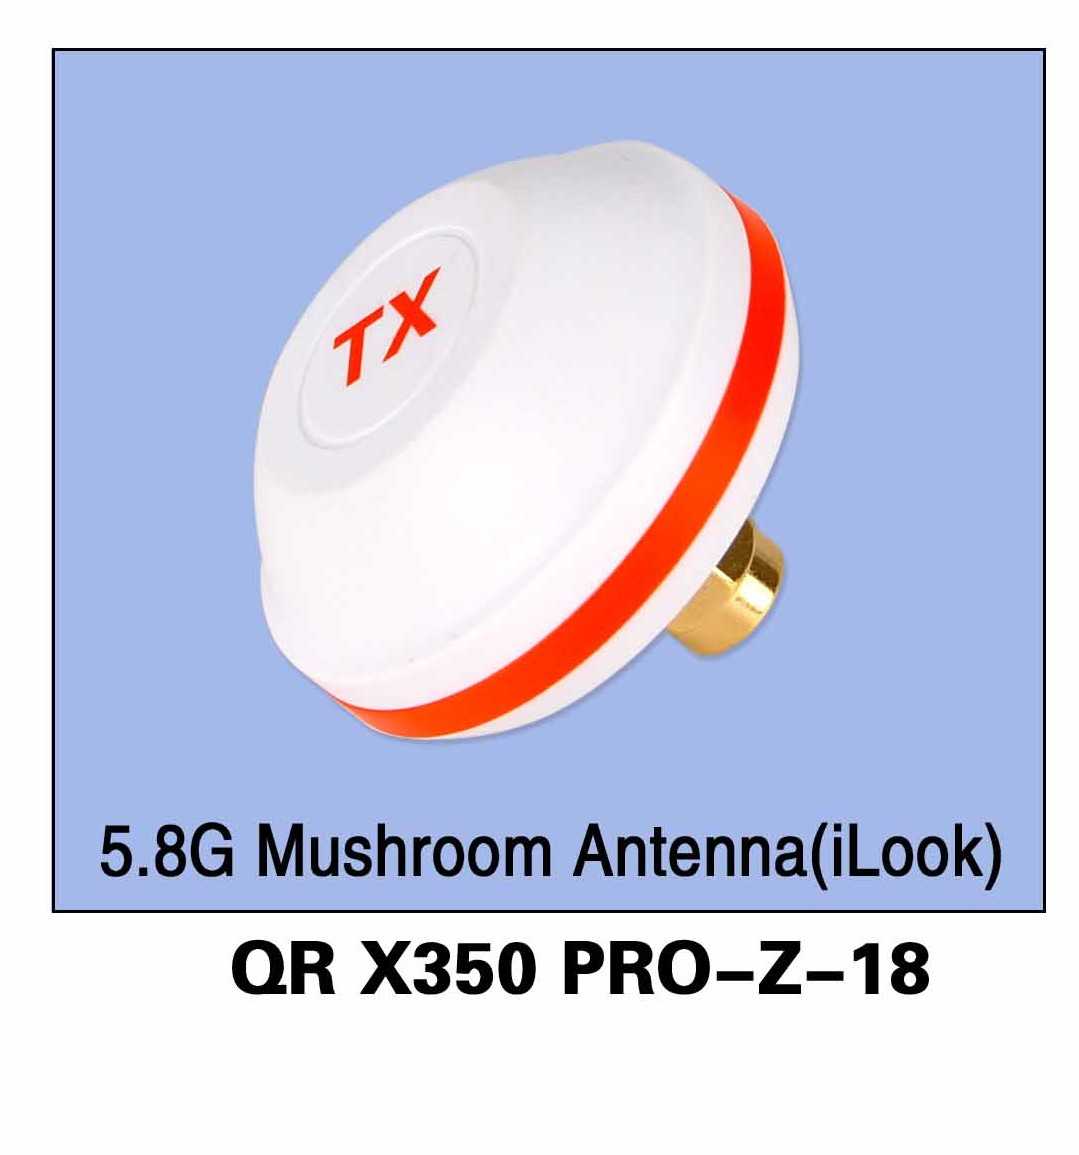 Mushroom Antenna for iLook+